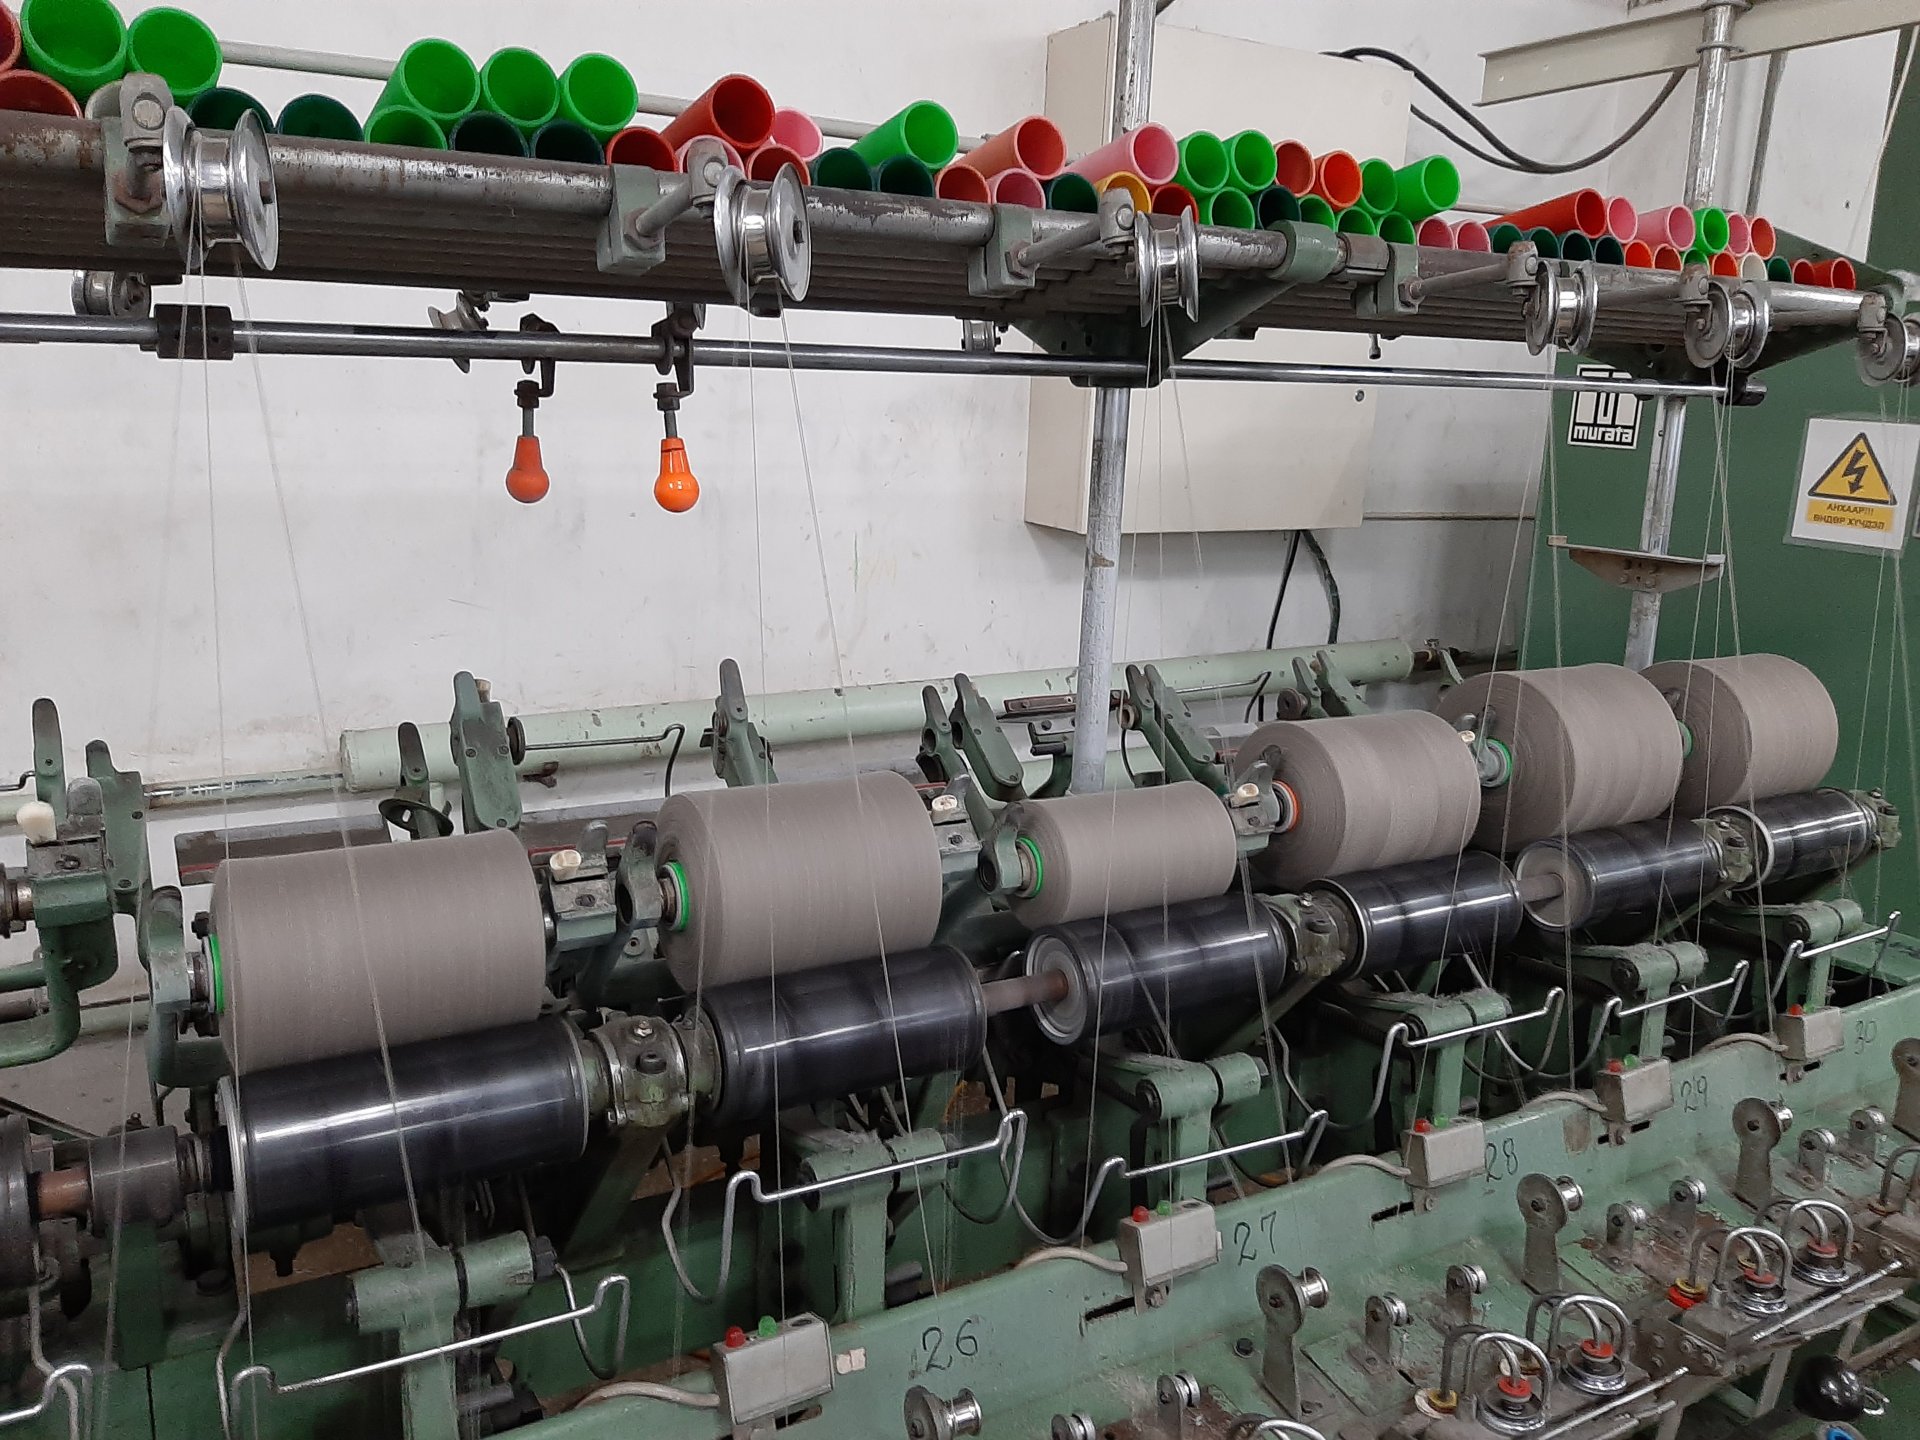 Текстилийн тогтвортой үйлдвэрлэлийн дадал олгох зөвлөх үйлчилгээ